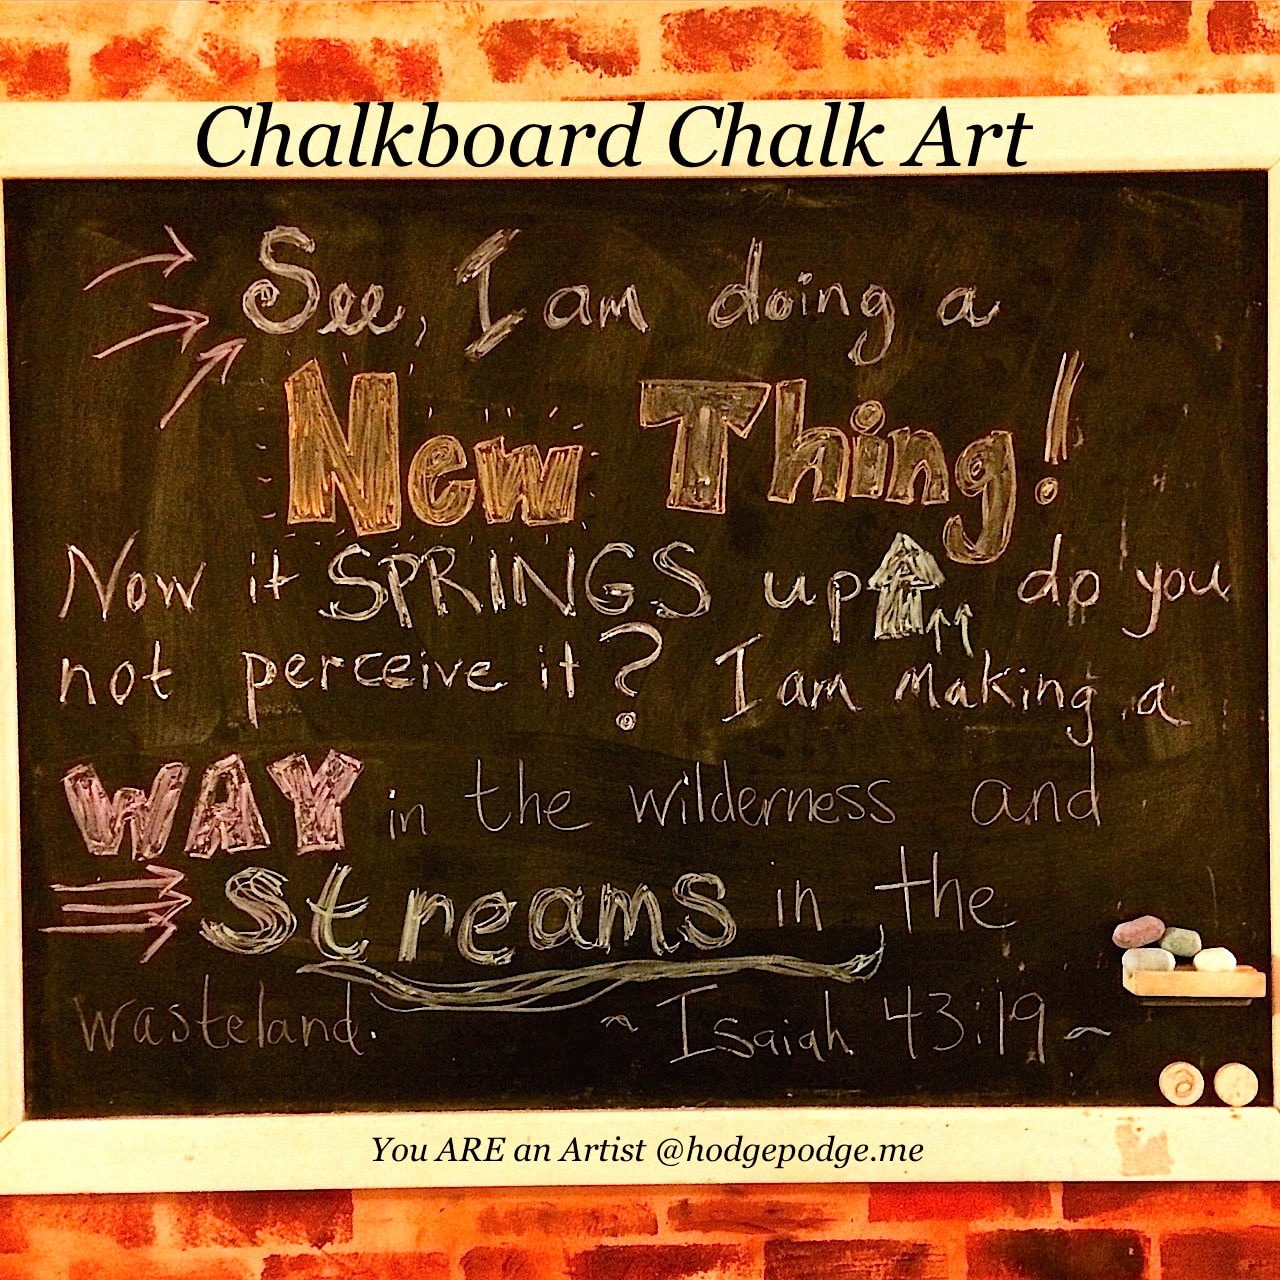 Chalkboard Chalk Art